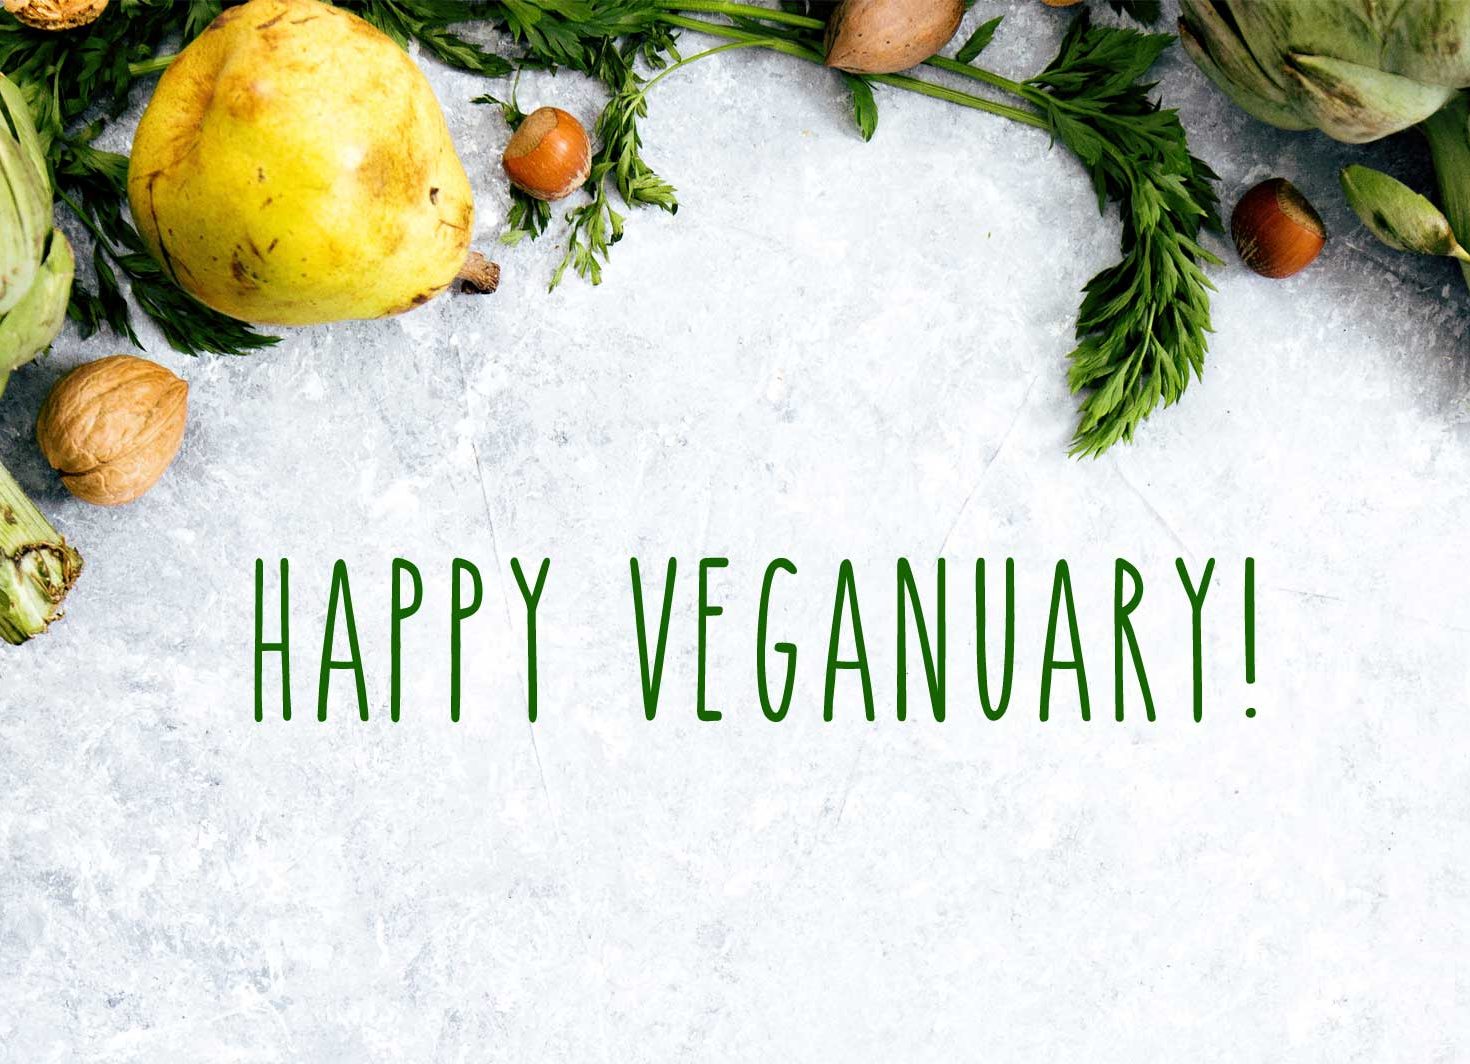 Happy Veganuary!